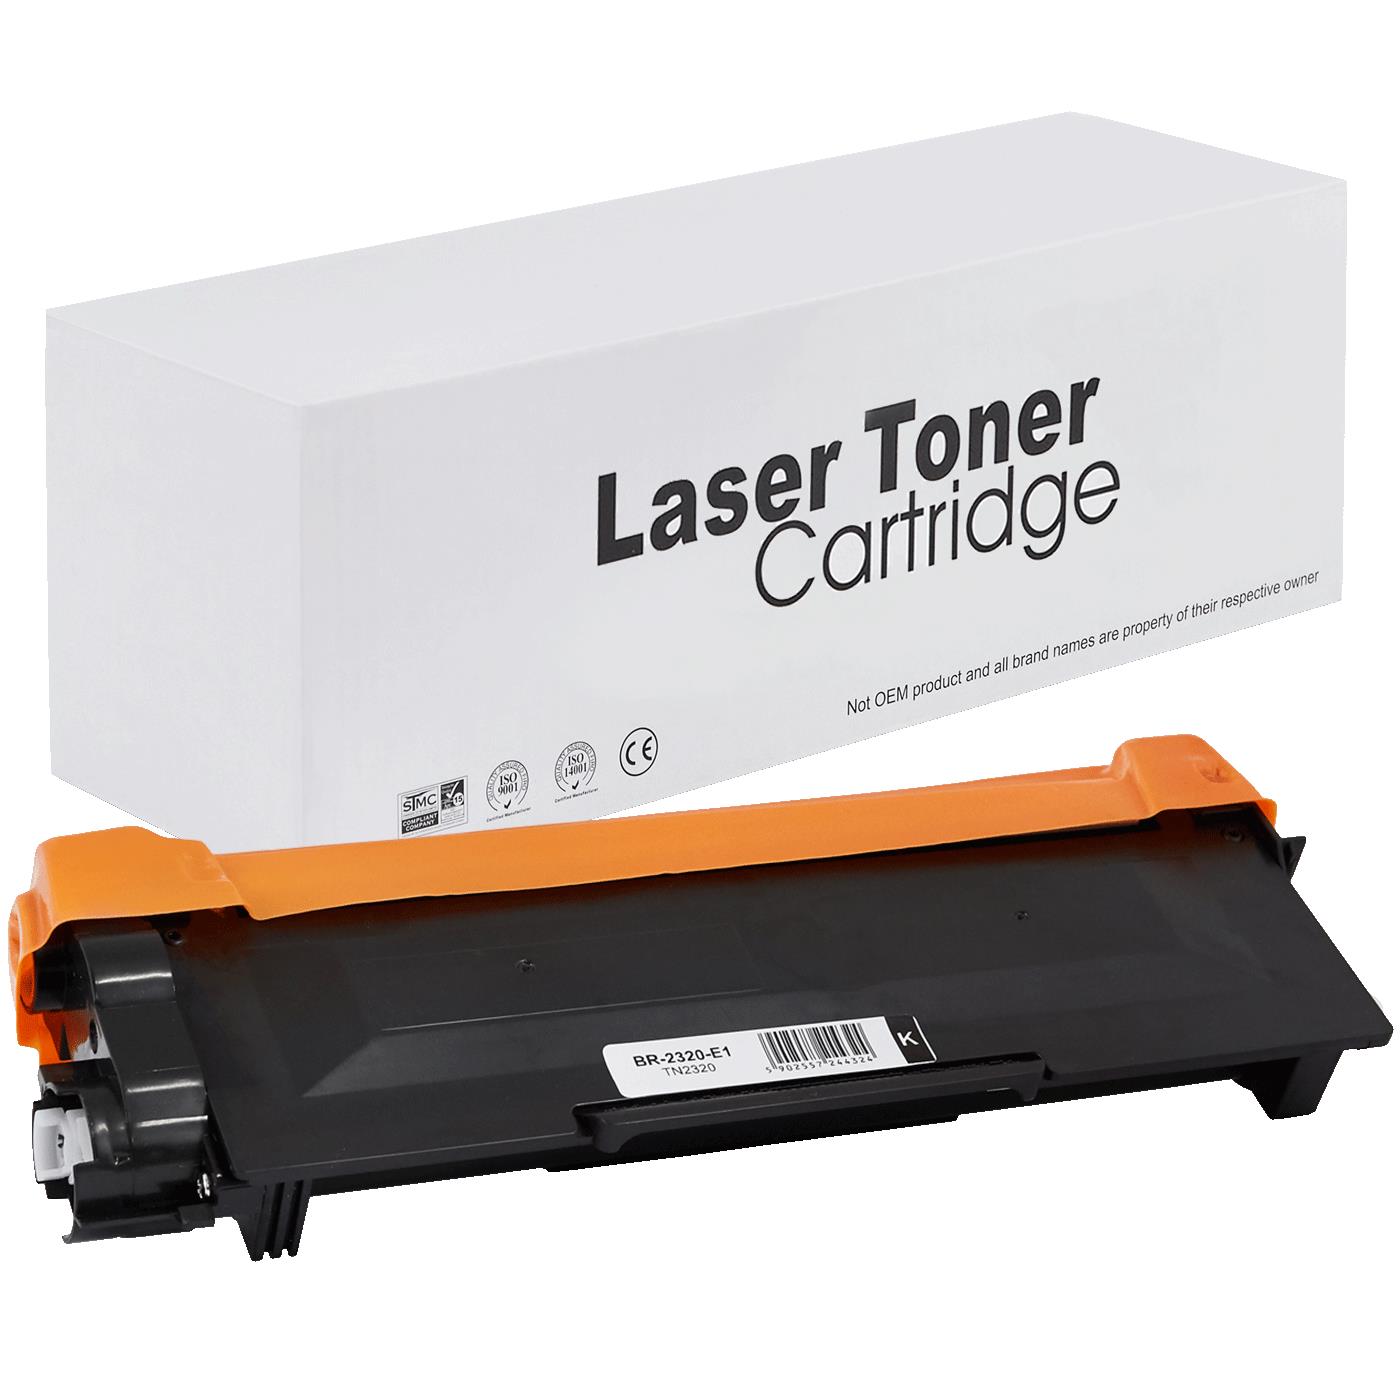 съвместима тонер касета за принтери и печатащи устройства на Brother DCP-L 2500 SERIES Toner BR-2320 | TN2320 / TN2310 / TN-2320. Ниски цени, прецизно изпълнение, високо качество.